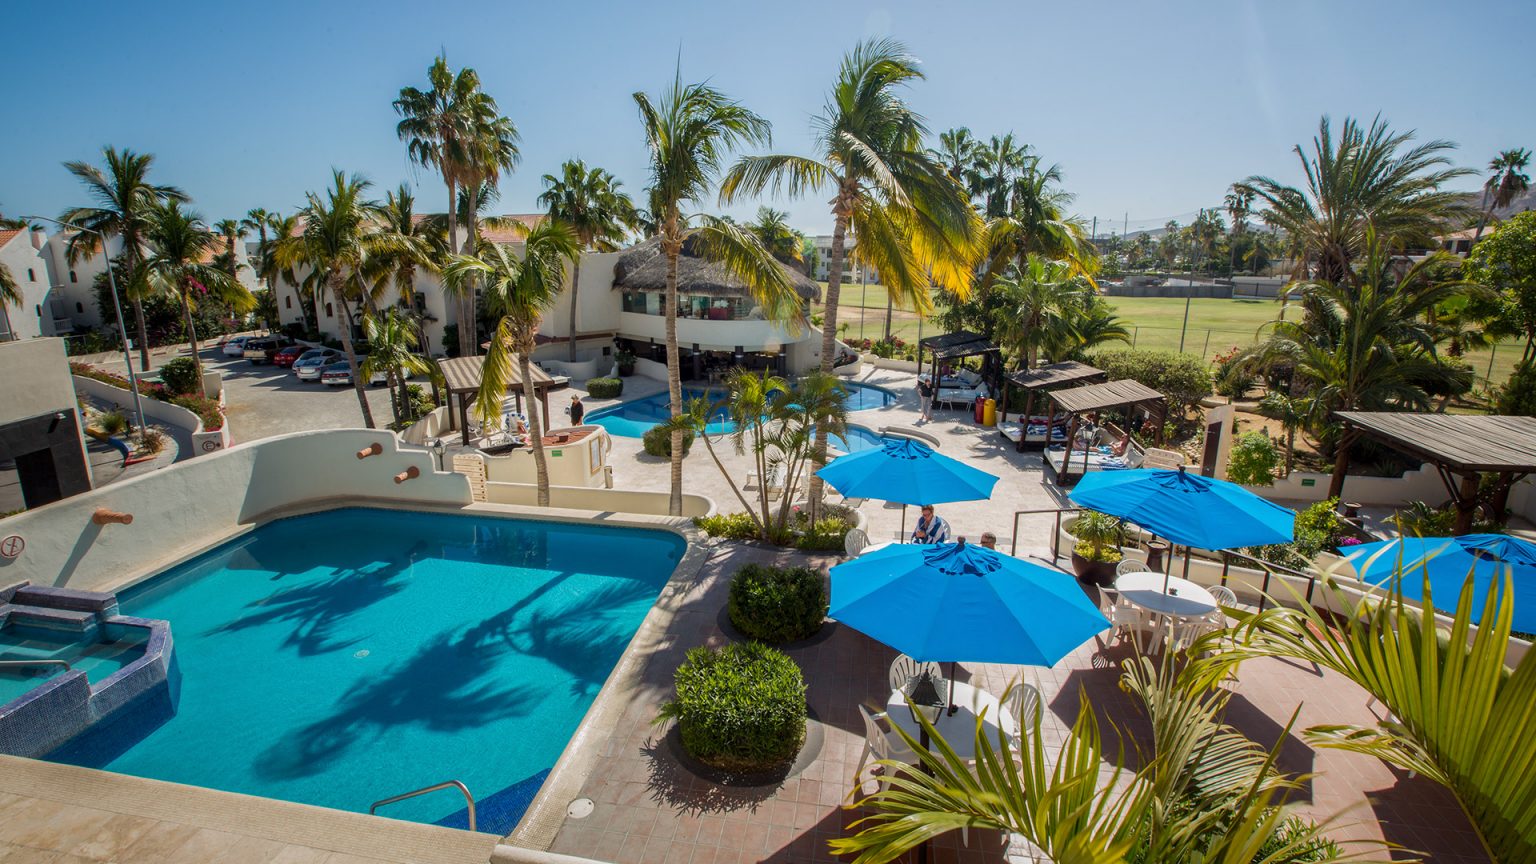 royal-holiday-hotel-resort-alberca-palmeras-hotel-park-royal-los-cabos-mexico-baja-california-sur-san-jose-del-cabo-1536x864